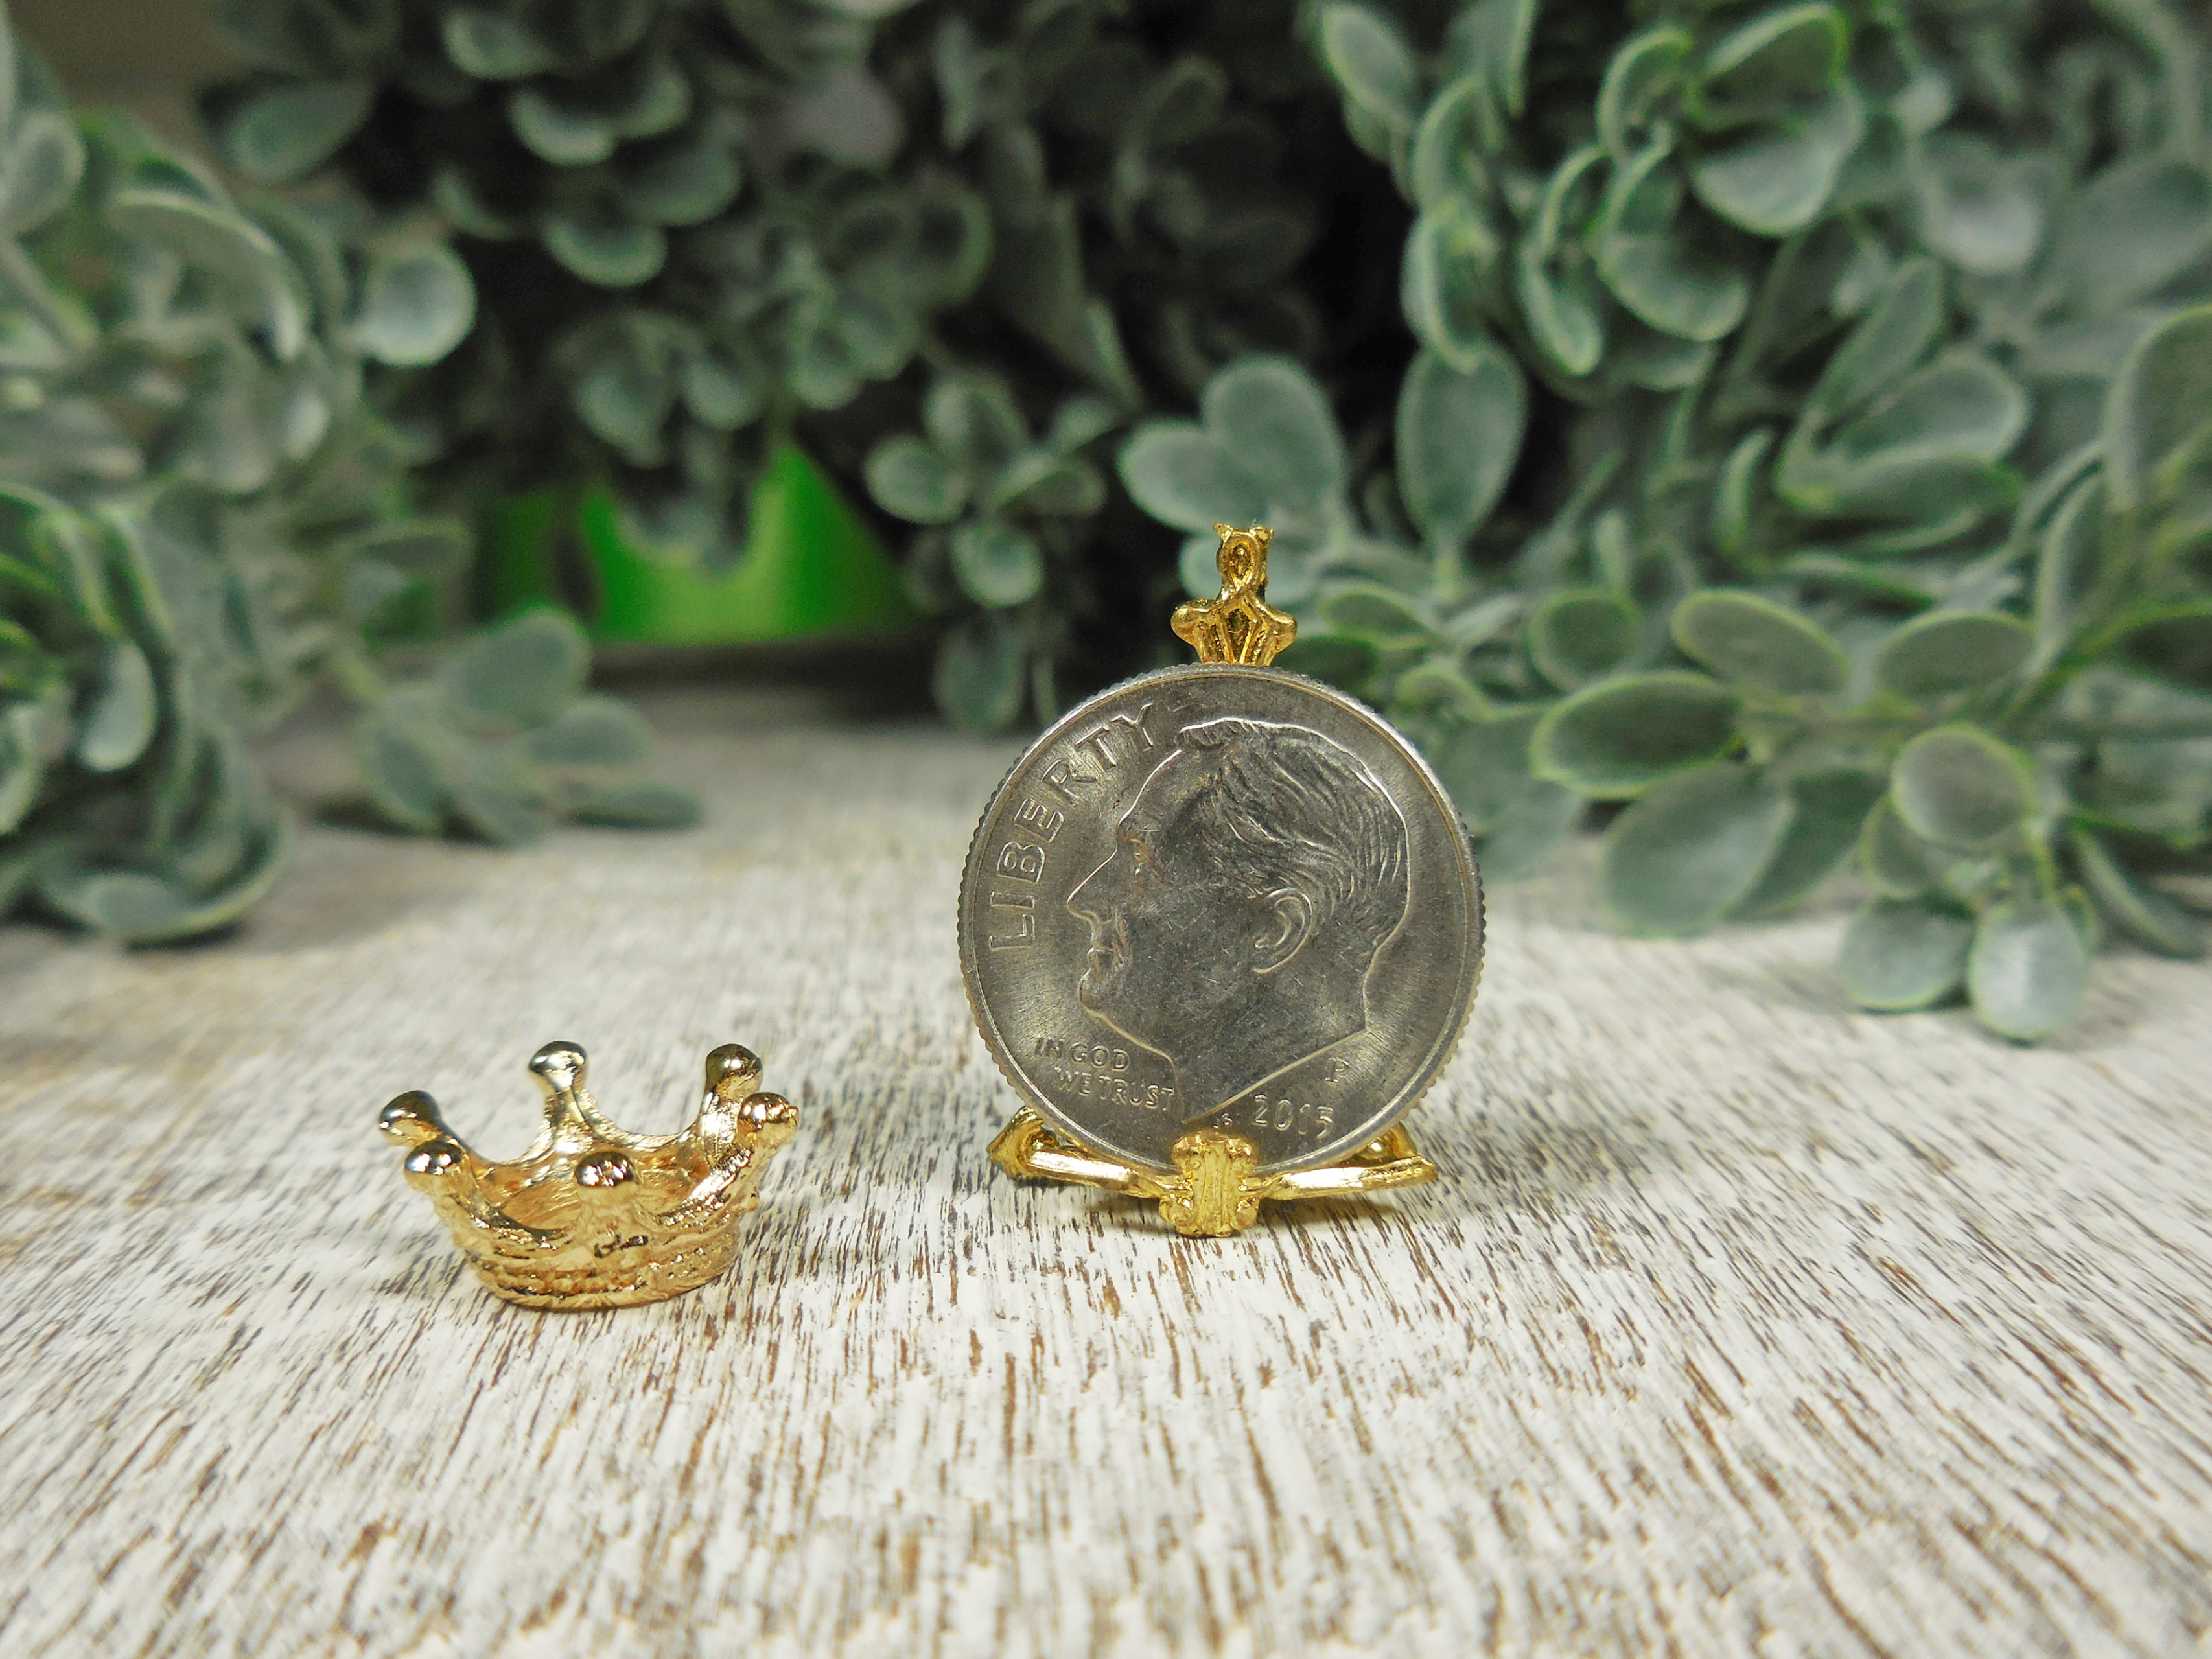 Mini Foil Gold Crown - Doolins